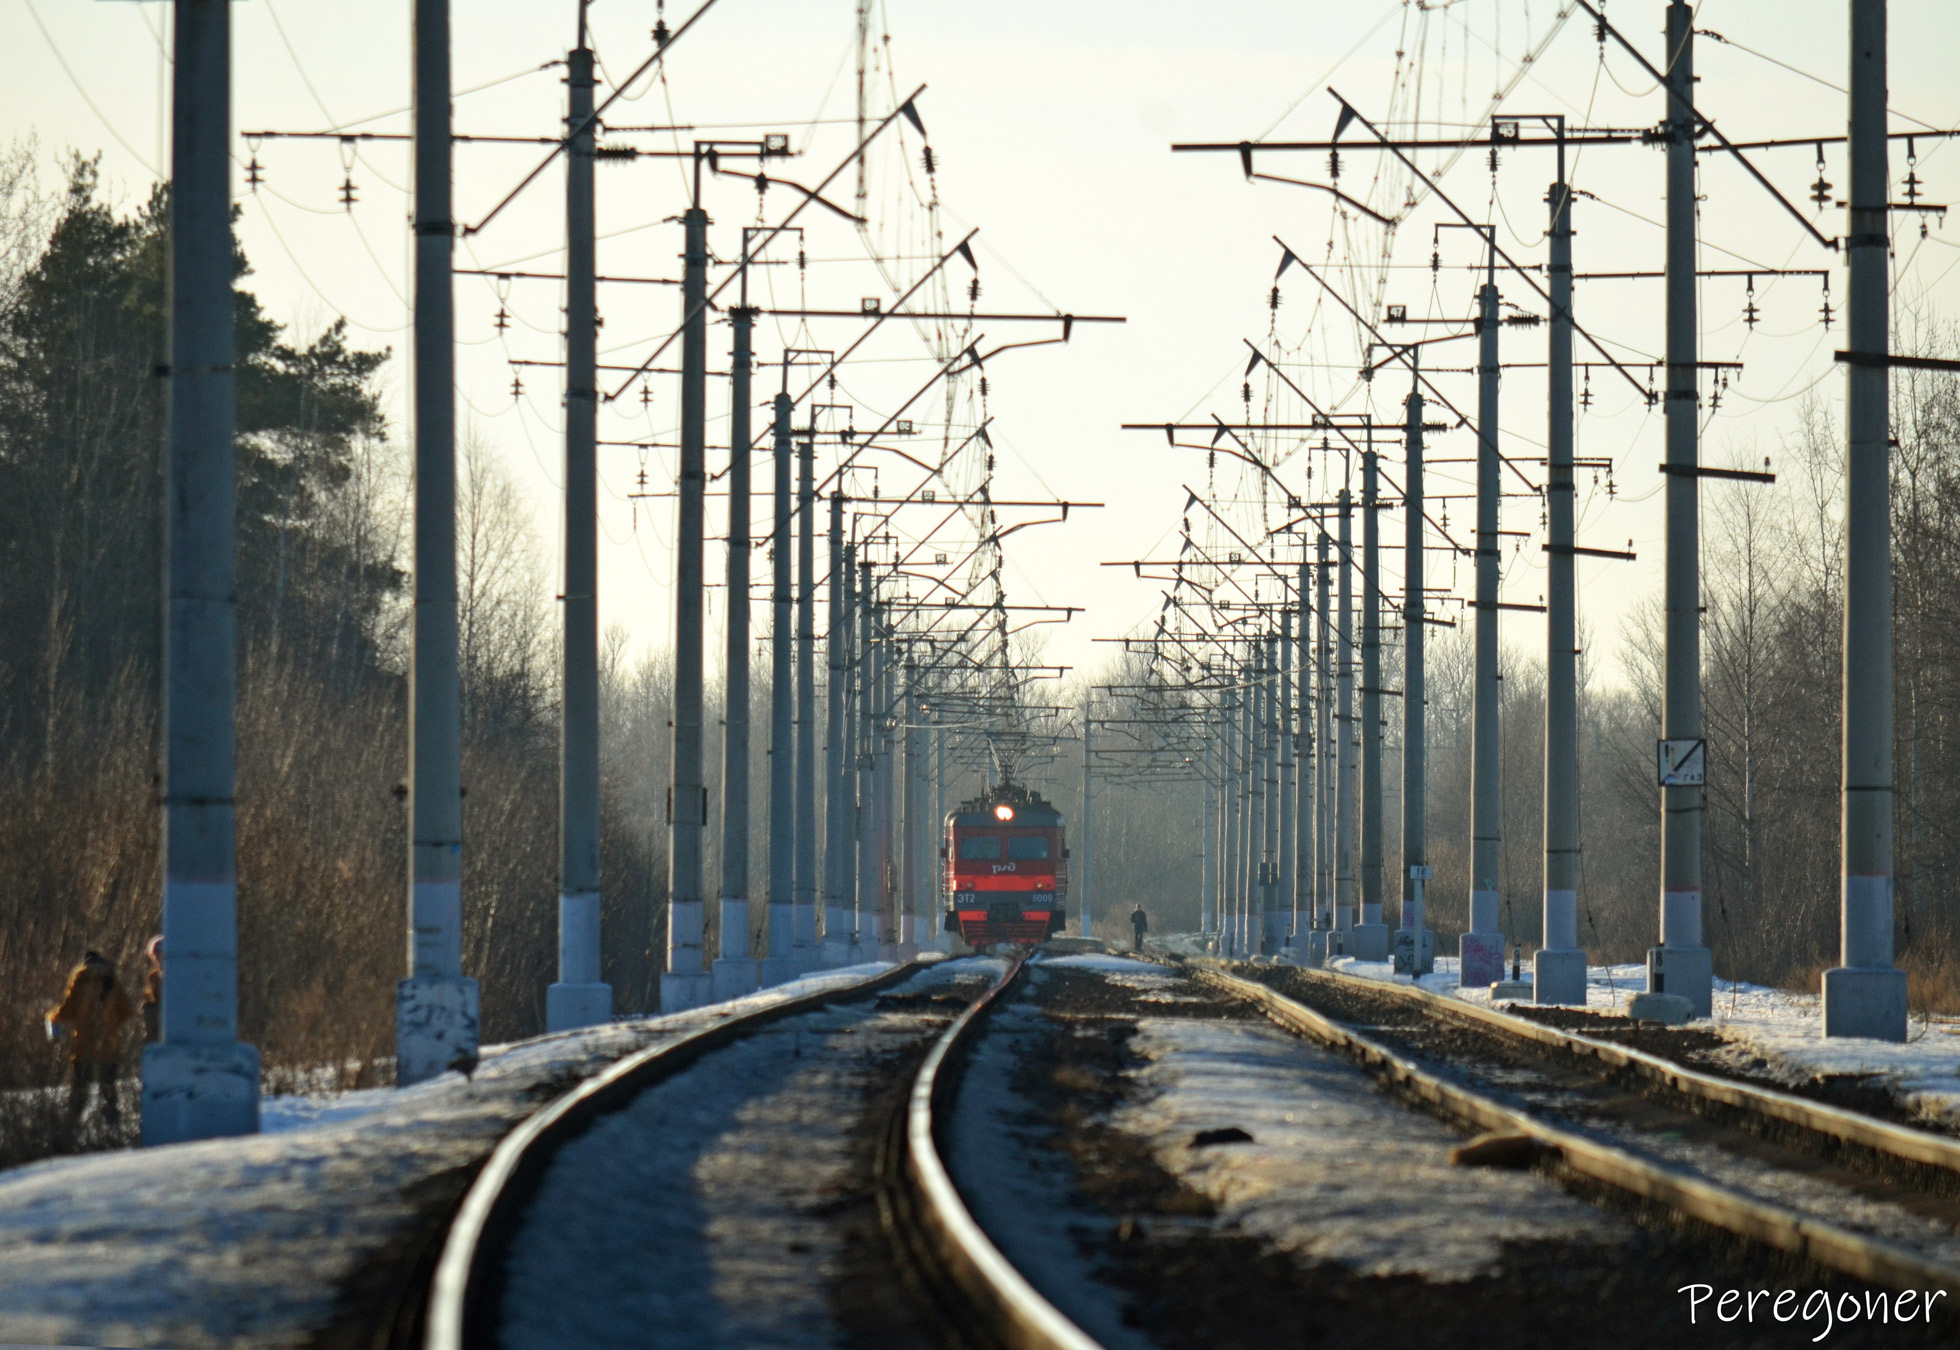 ЭТ2-8009; Октябрьская железная дорога — Перегоны; Фотозарисовки (Октябрьская железная дорога)